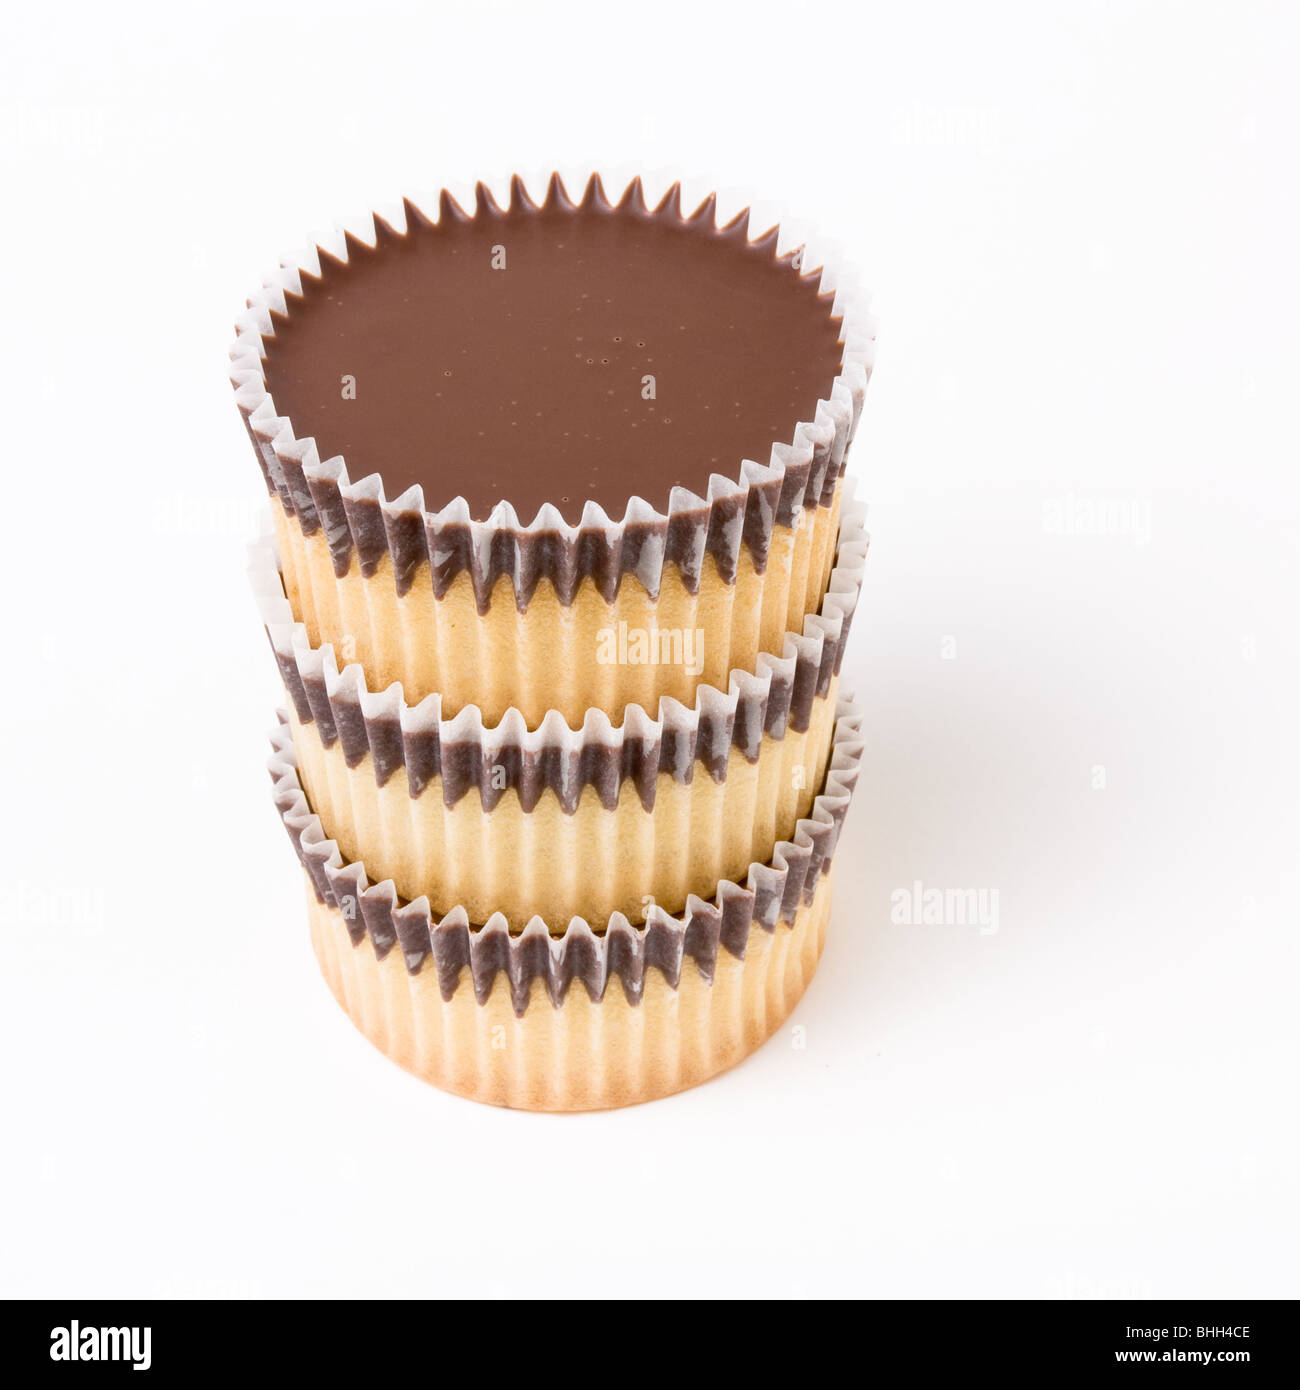 Il cioccolato e rabboccato spugna Cup cake isolata contro uno sfondo bianco. Foto Stock